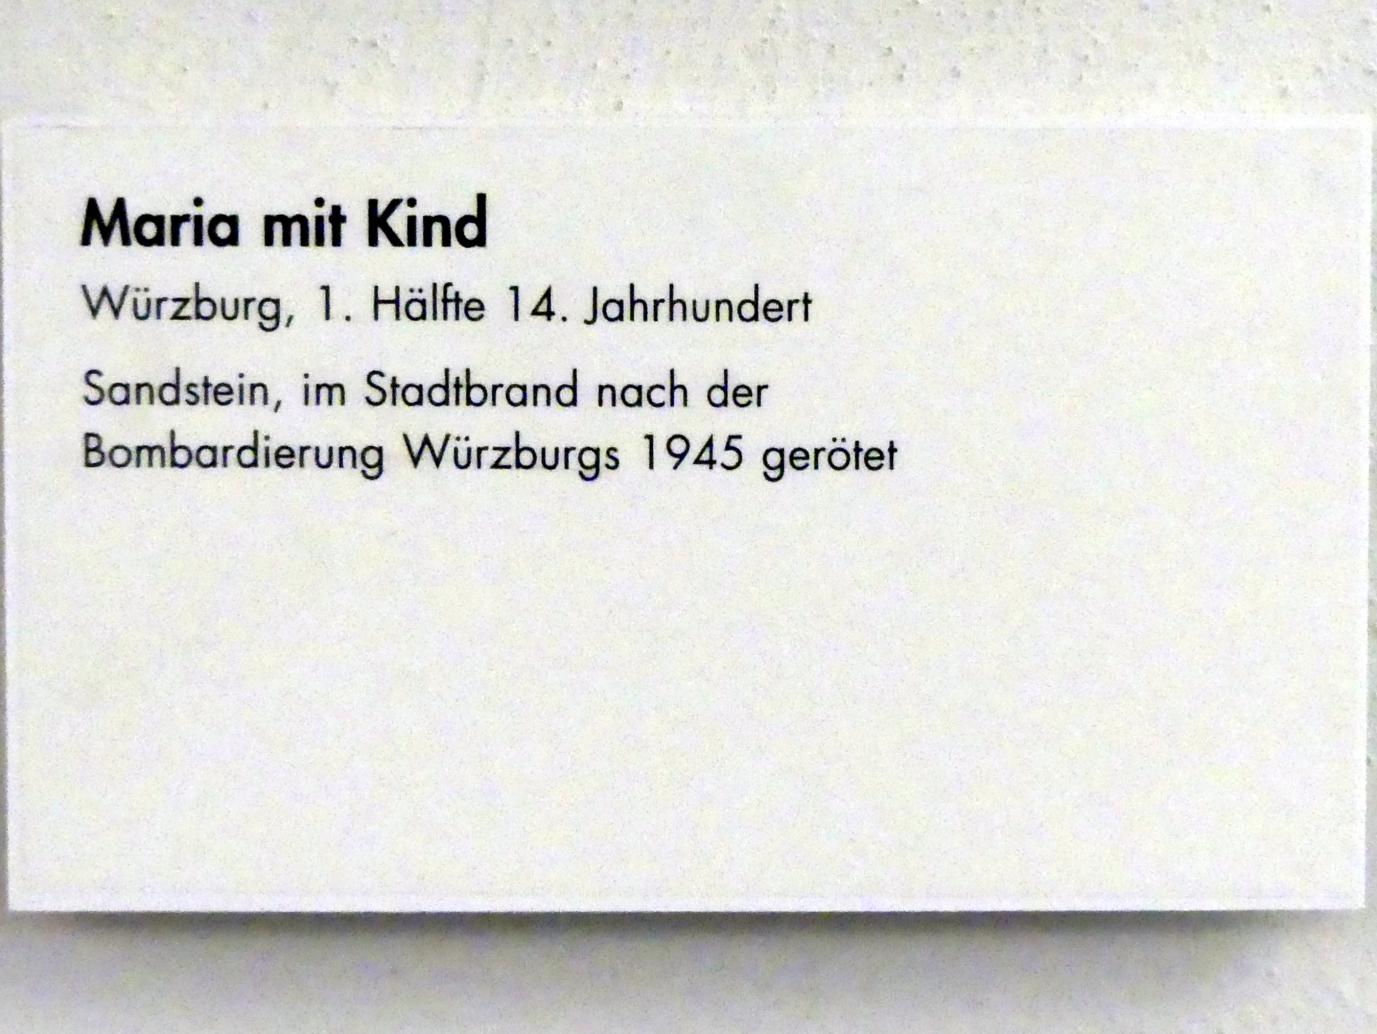 Maria mit Kind, Würzburg, Museum für Franken (ehem. Mainfränkisches Museum), Ritter-Saal, 1. Hälfte 14. Jhd., Bild 2/2